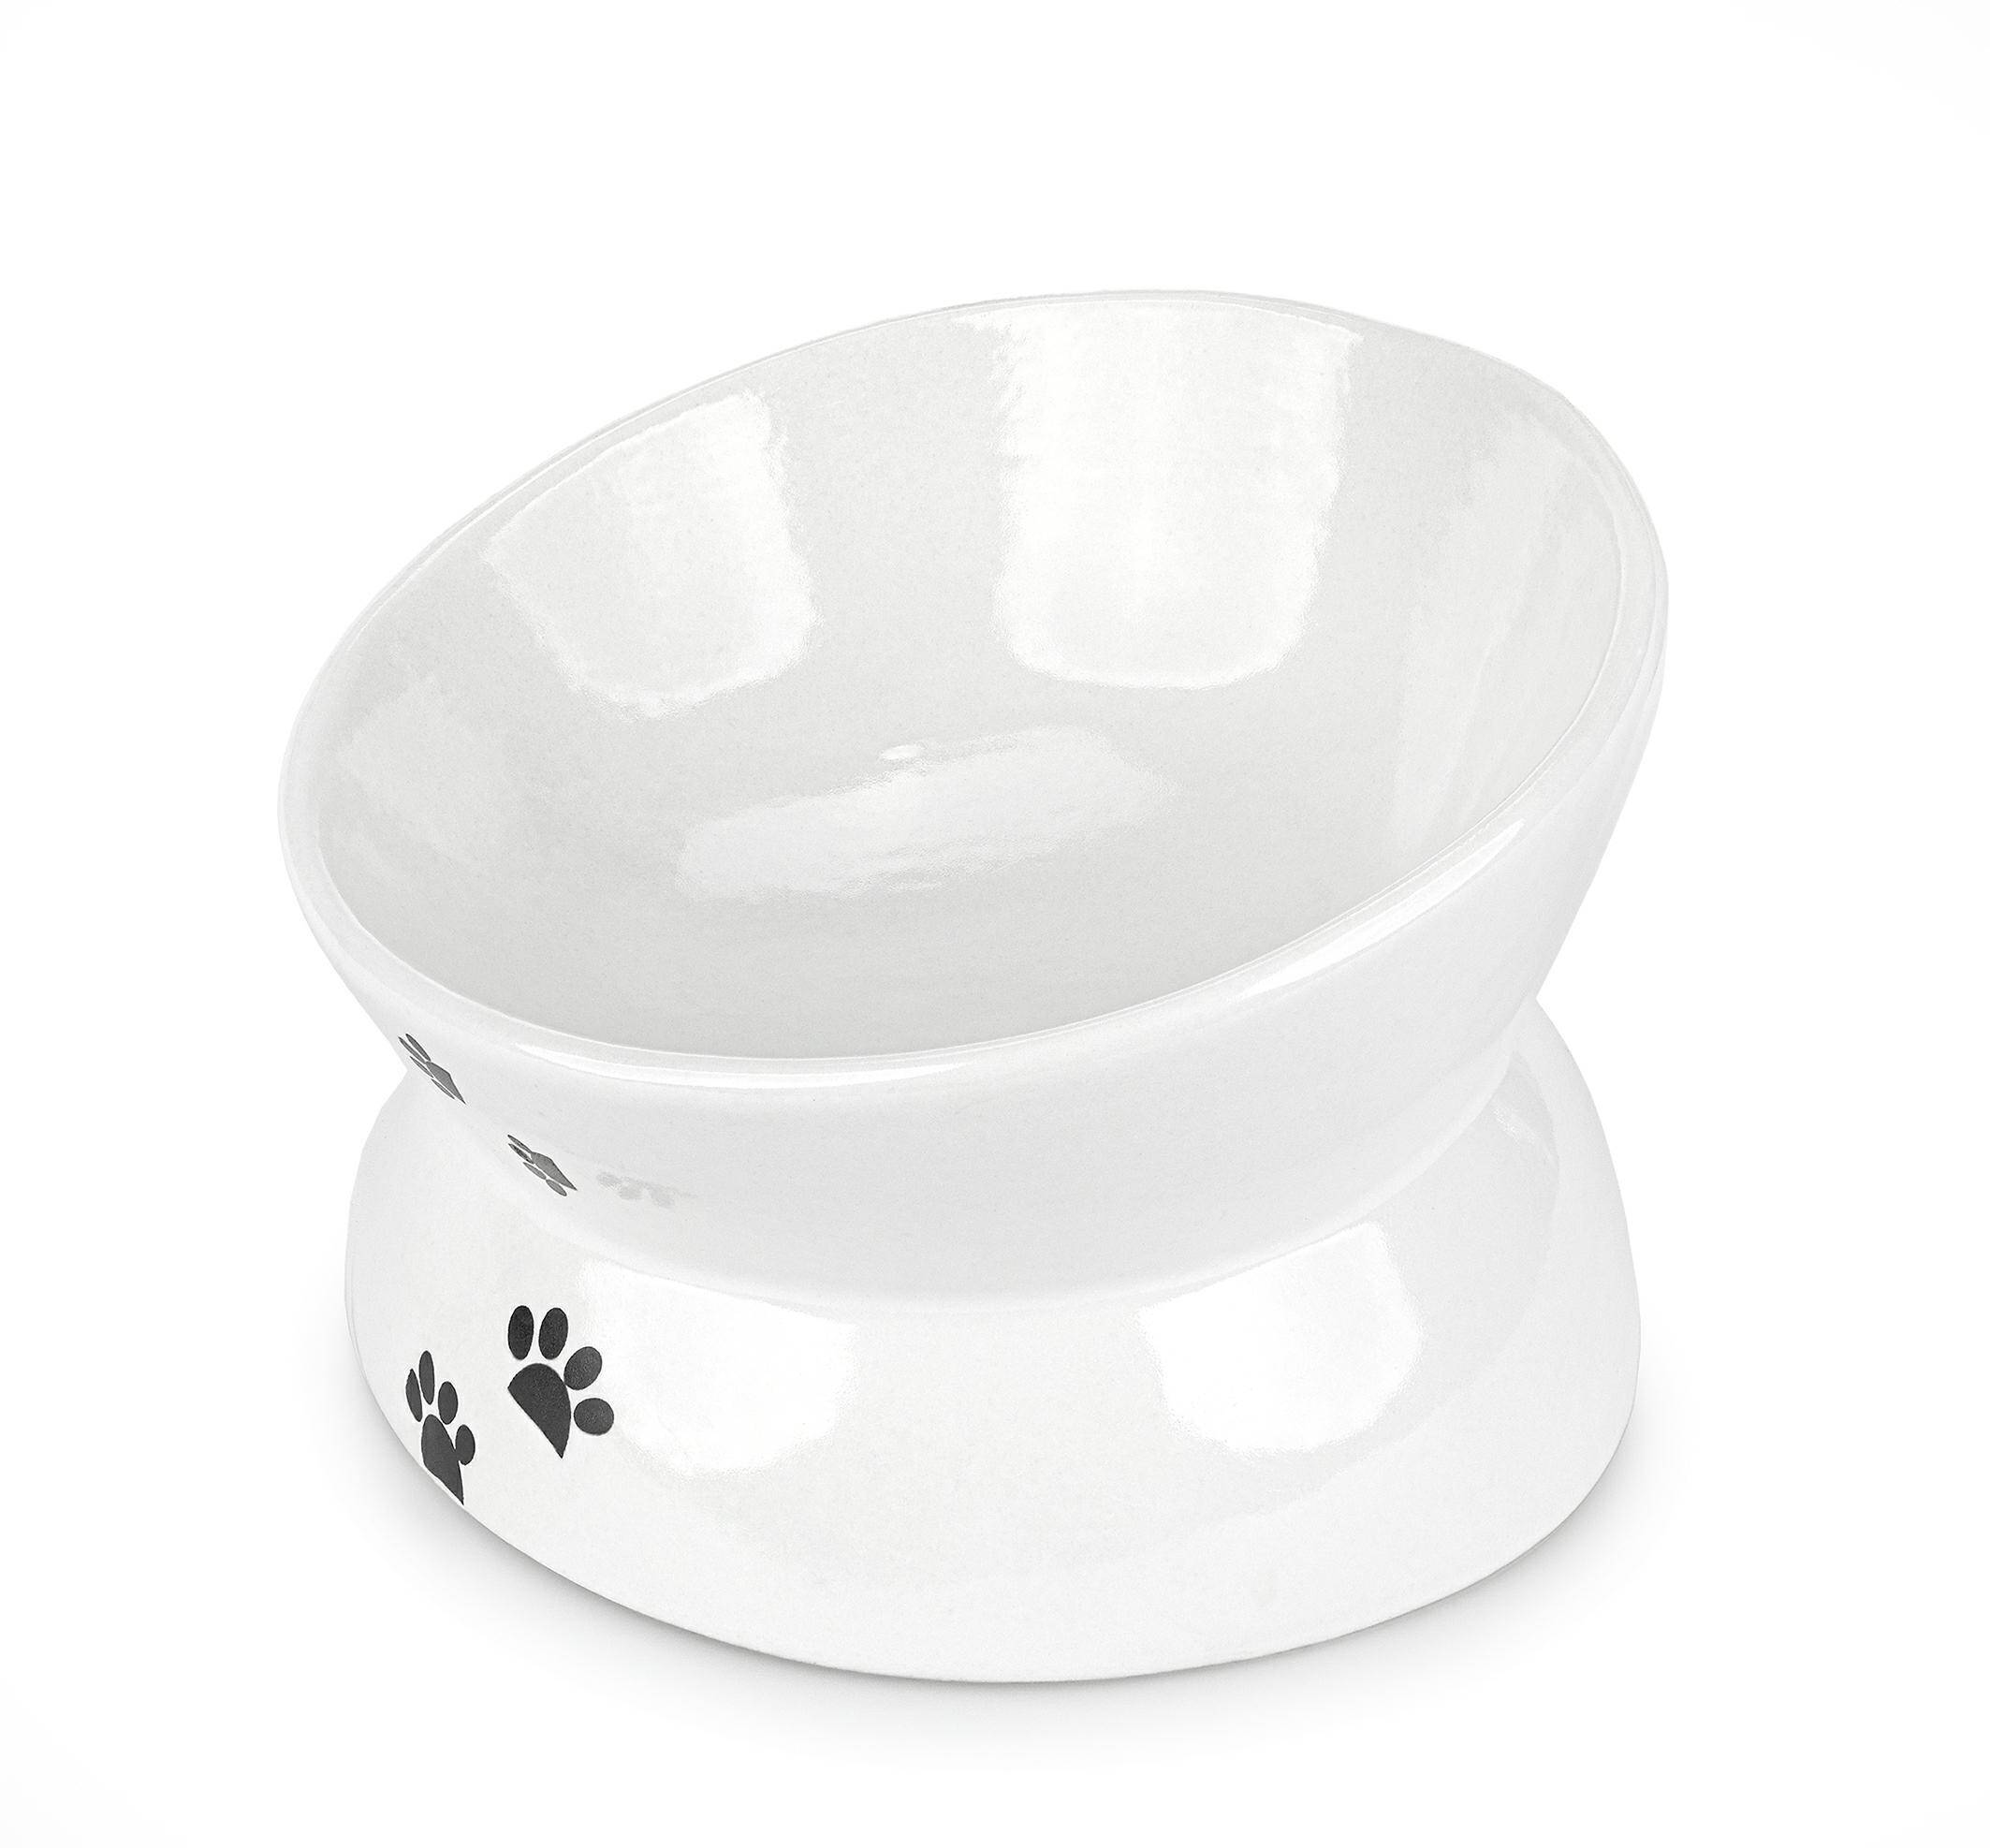 Ceramic raised bowl 13.5cm white